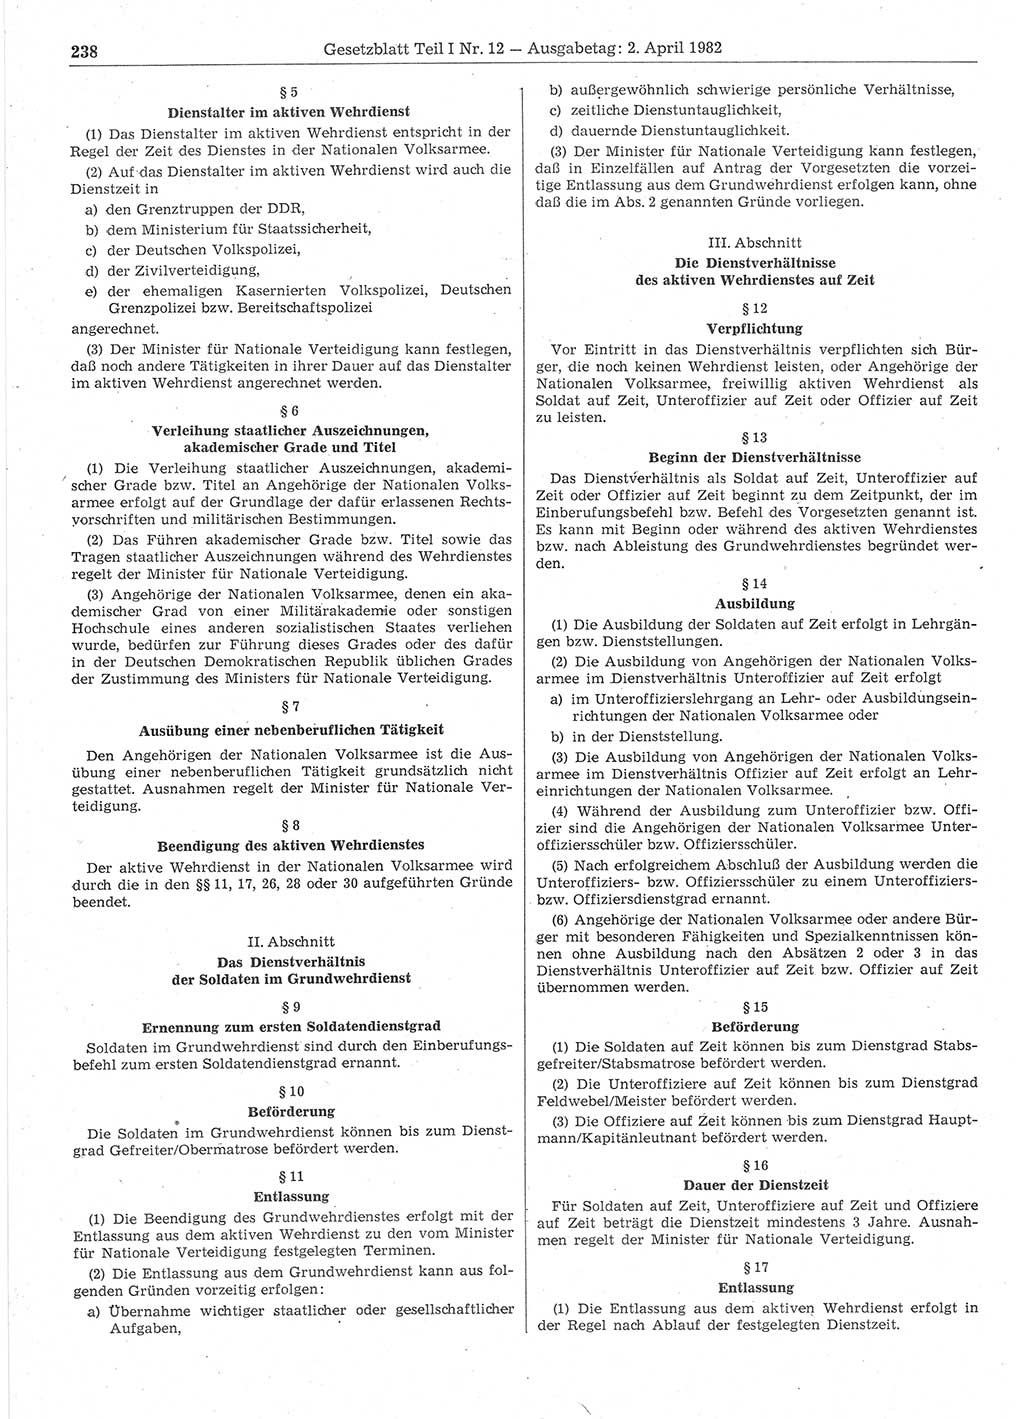 Gesetzblatt (GBl.) der Deutschen Demokratischen Republik (DDR) Teil Ⅰ 1982, Seite 238 (GBl. DDR Ⅰ 1982, S. 238)